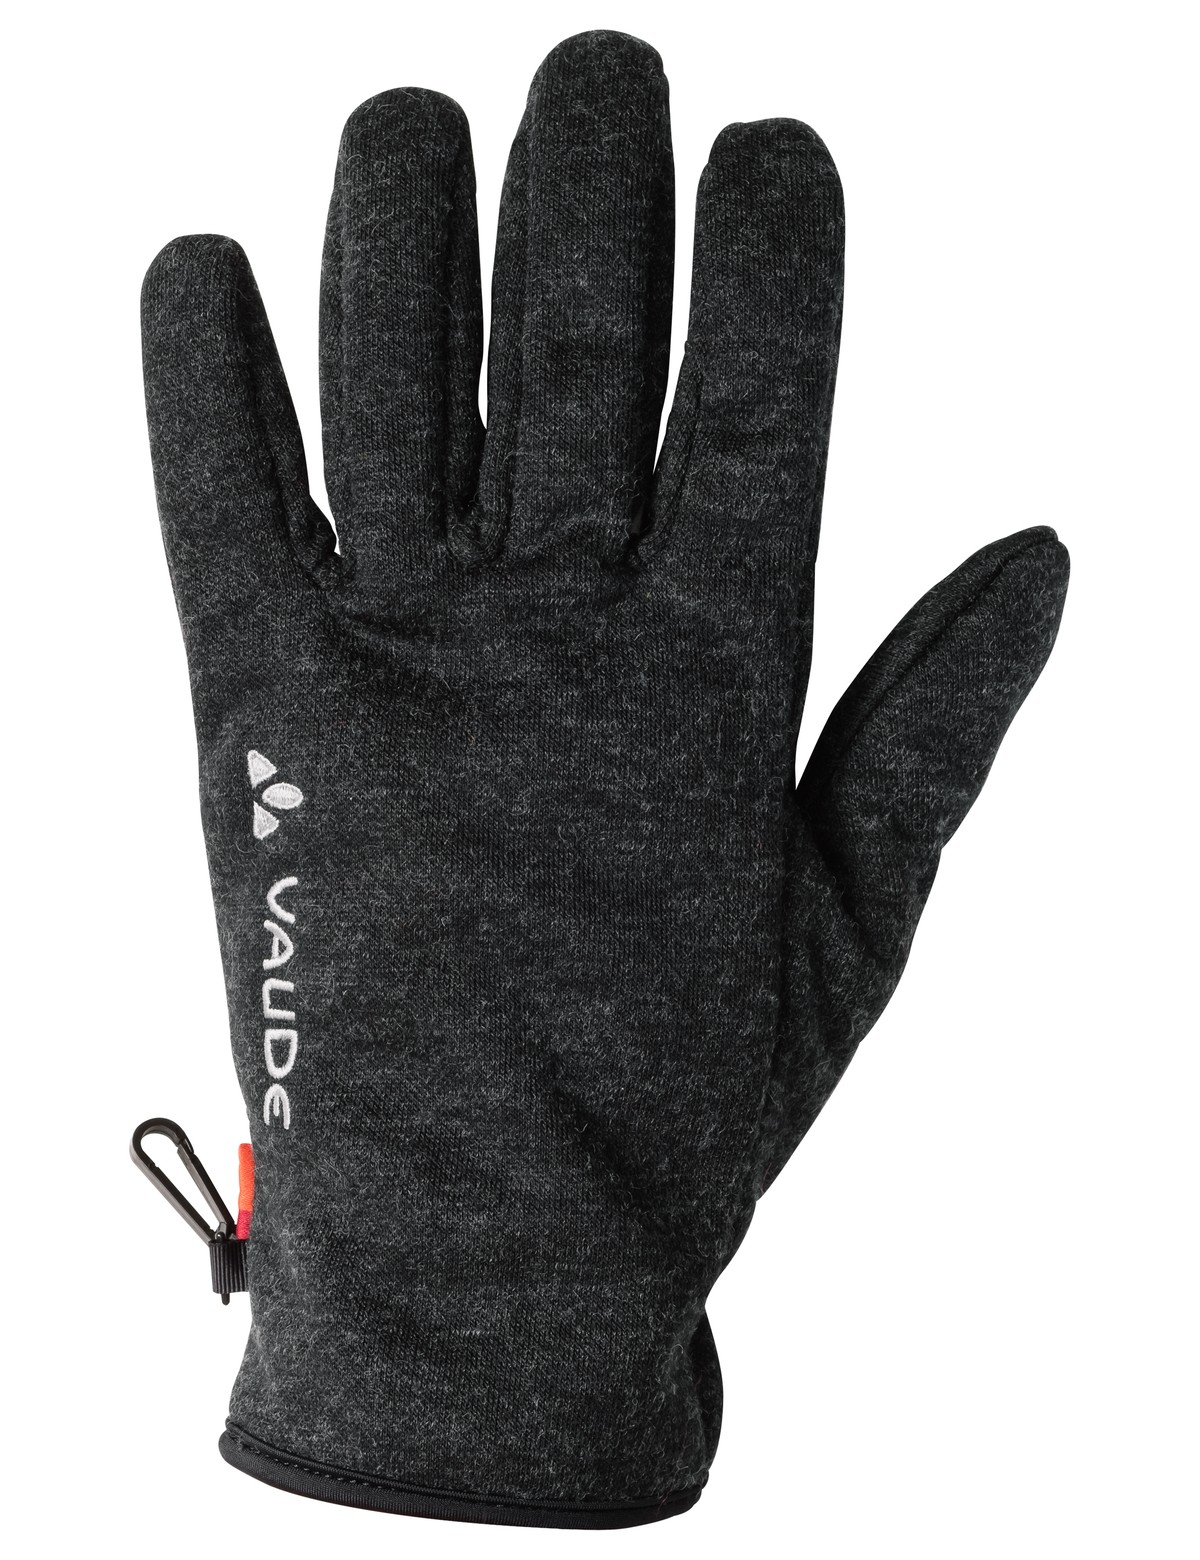 Rhonen Gloves, phantom black